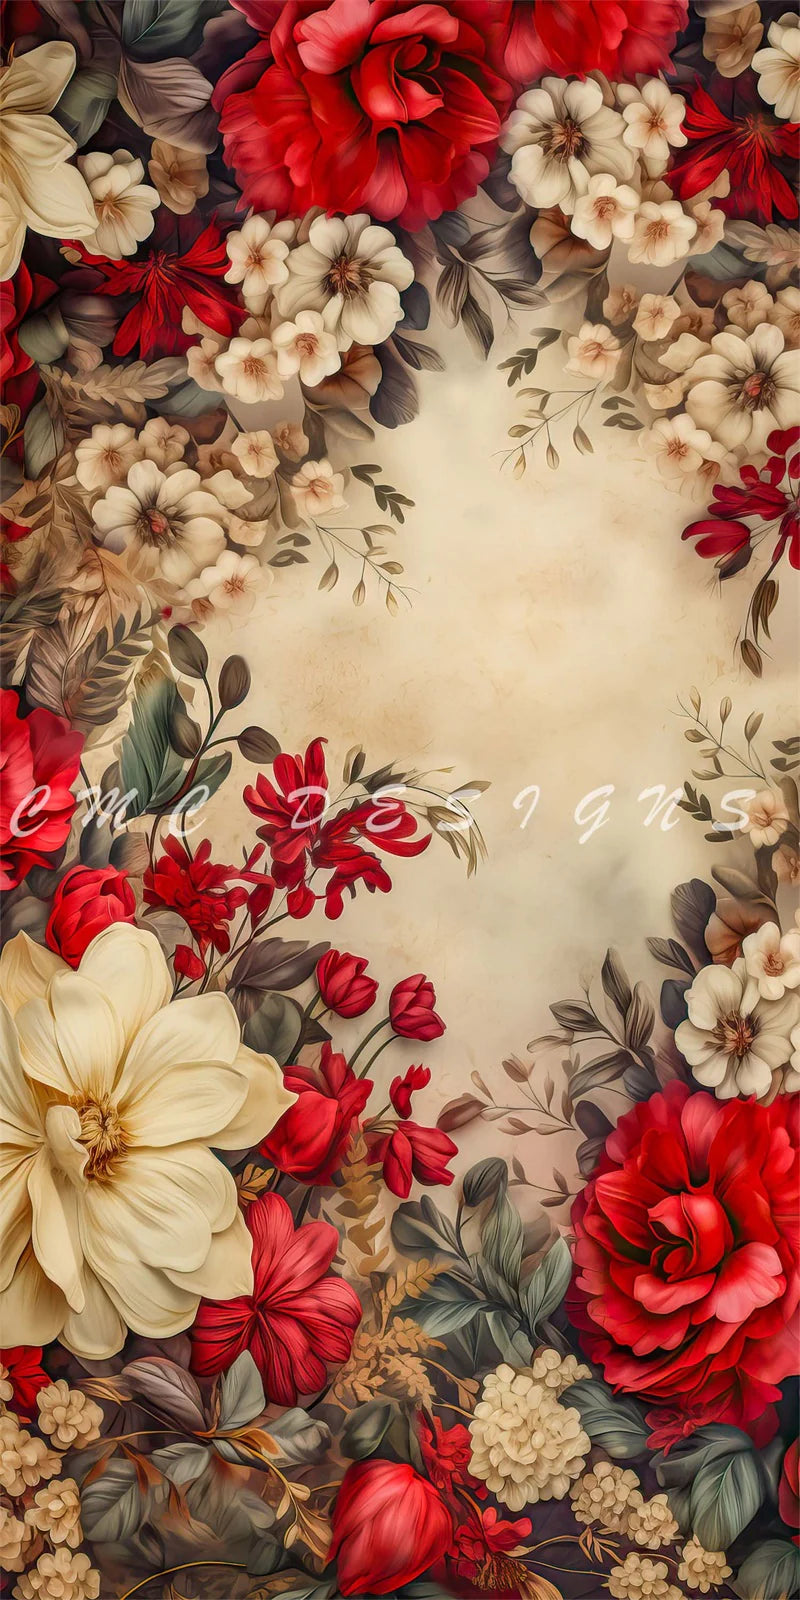 Kate Freude Blume Blüten Hintergrund von Candice Compton